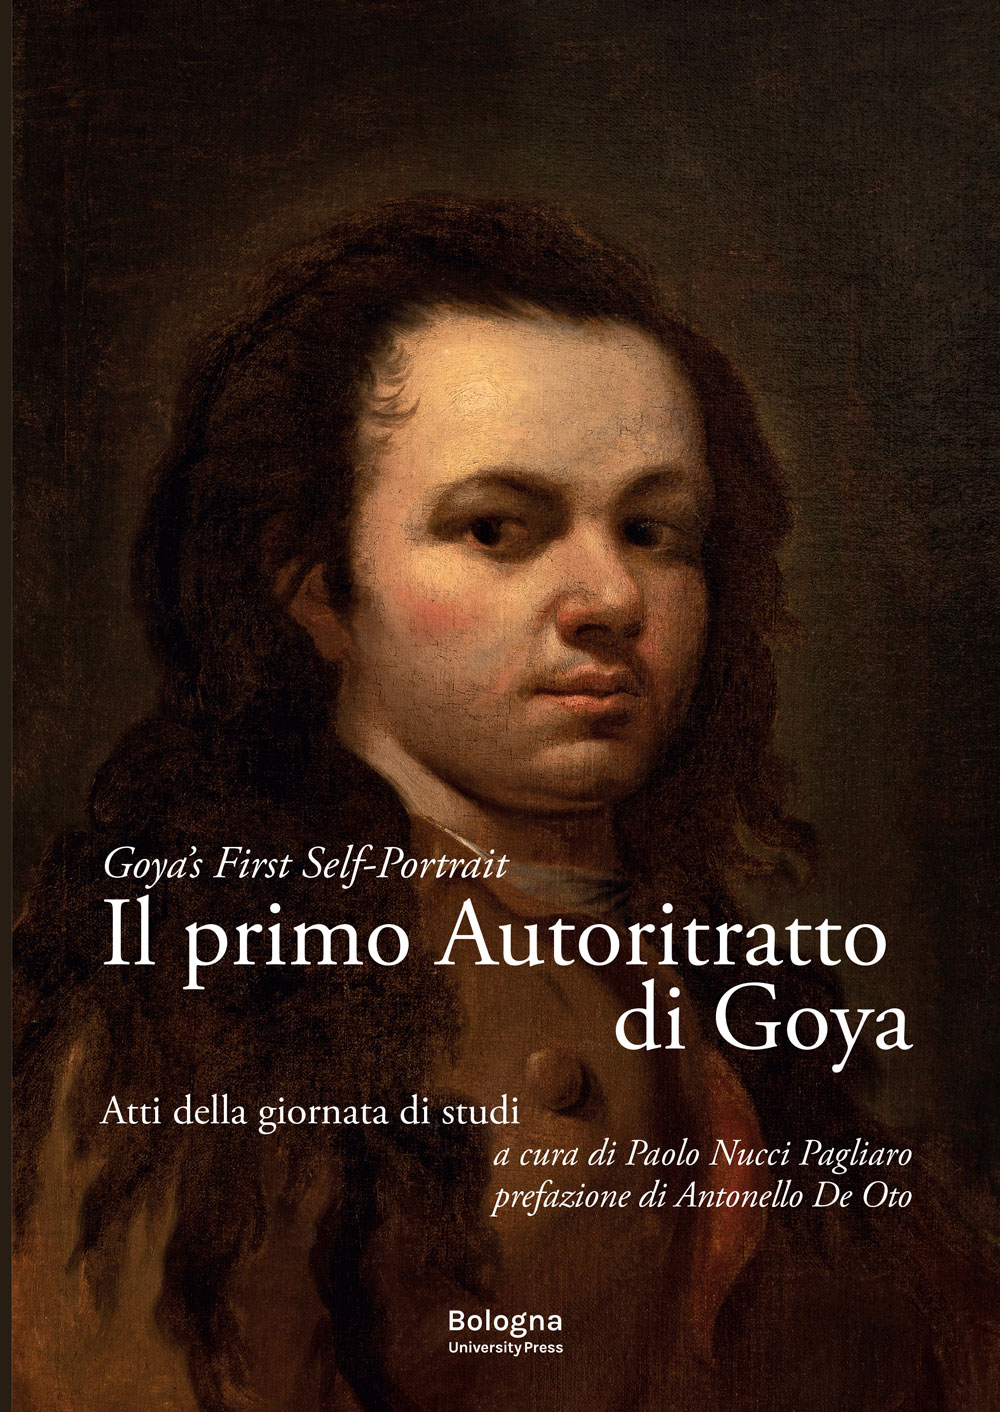 Il primo Autoritratto di Goya - Bologna University Press